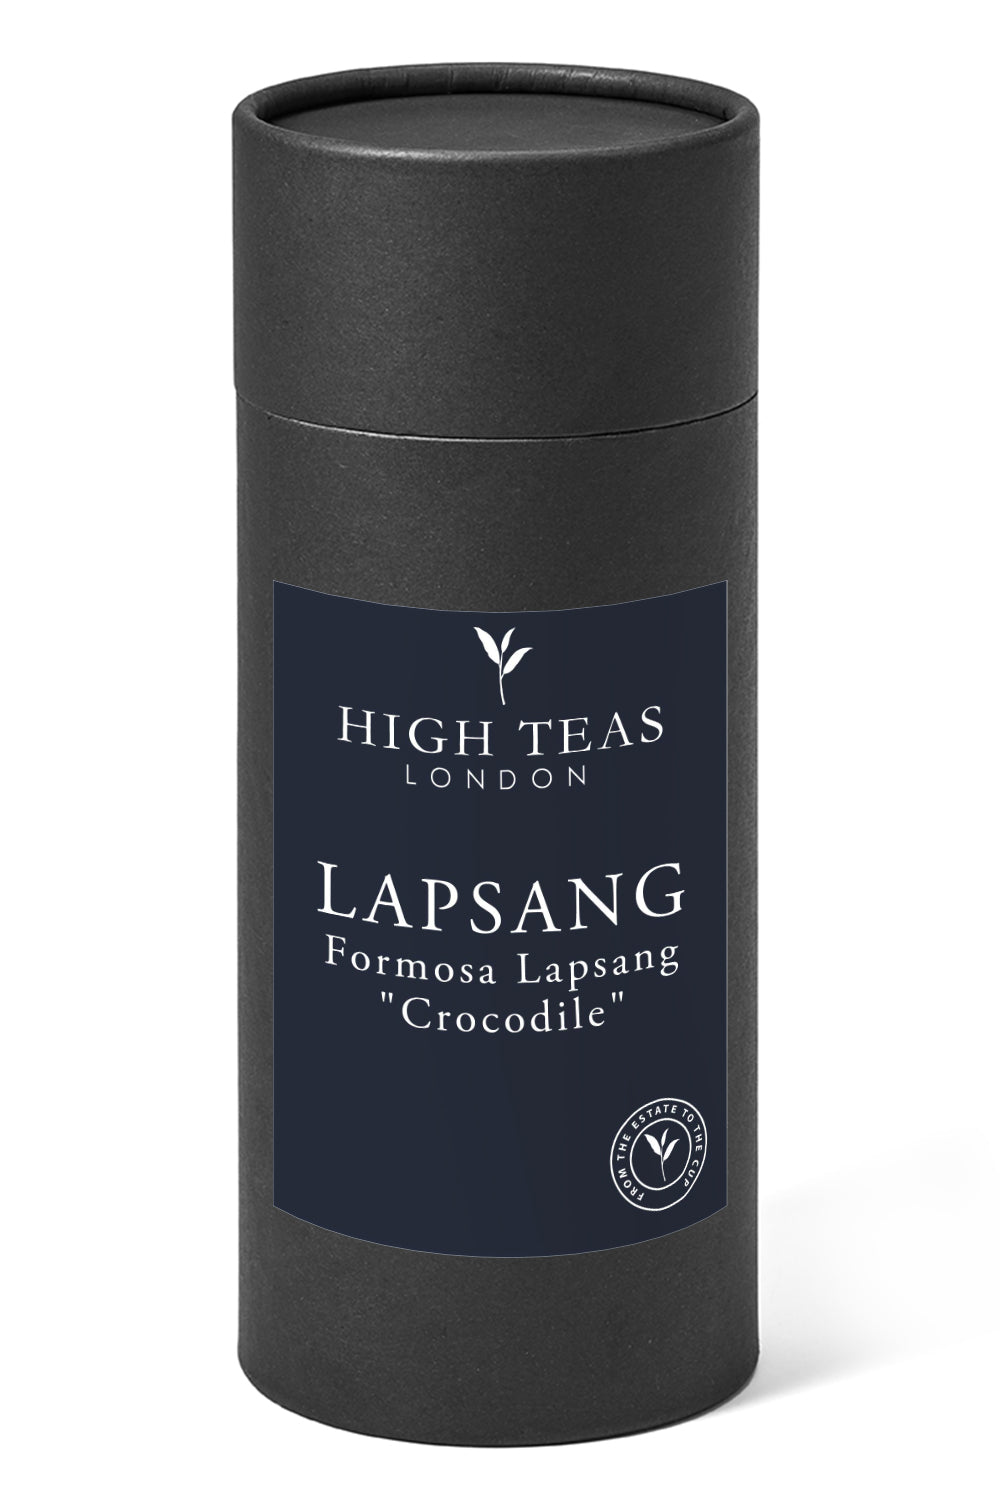 Formosa Lapsang "Crocodile"-150g gift-Loose Leaf Tea-High Teas